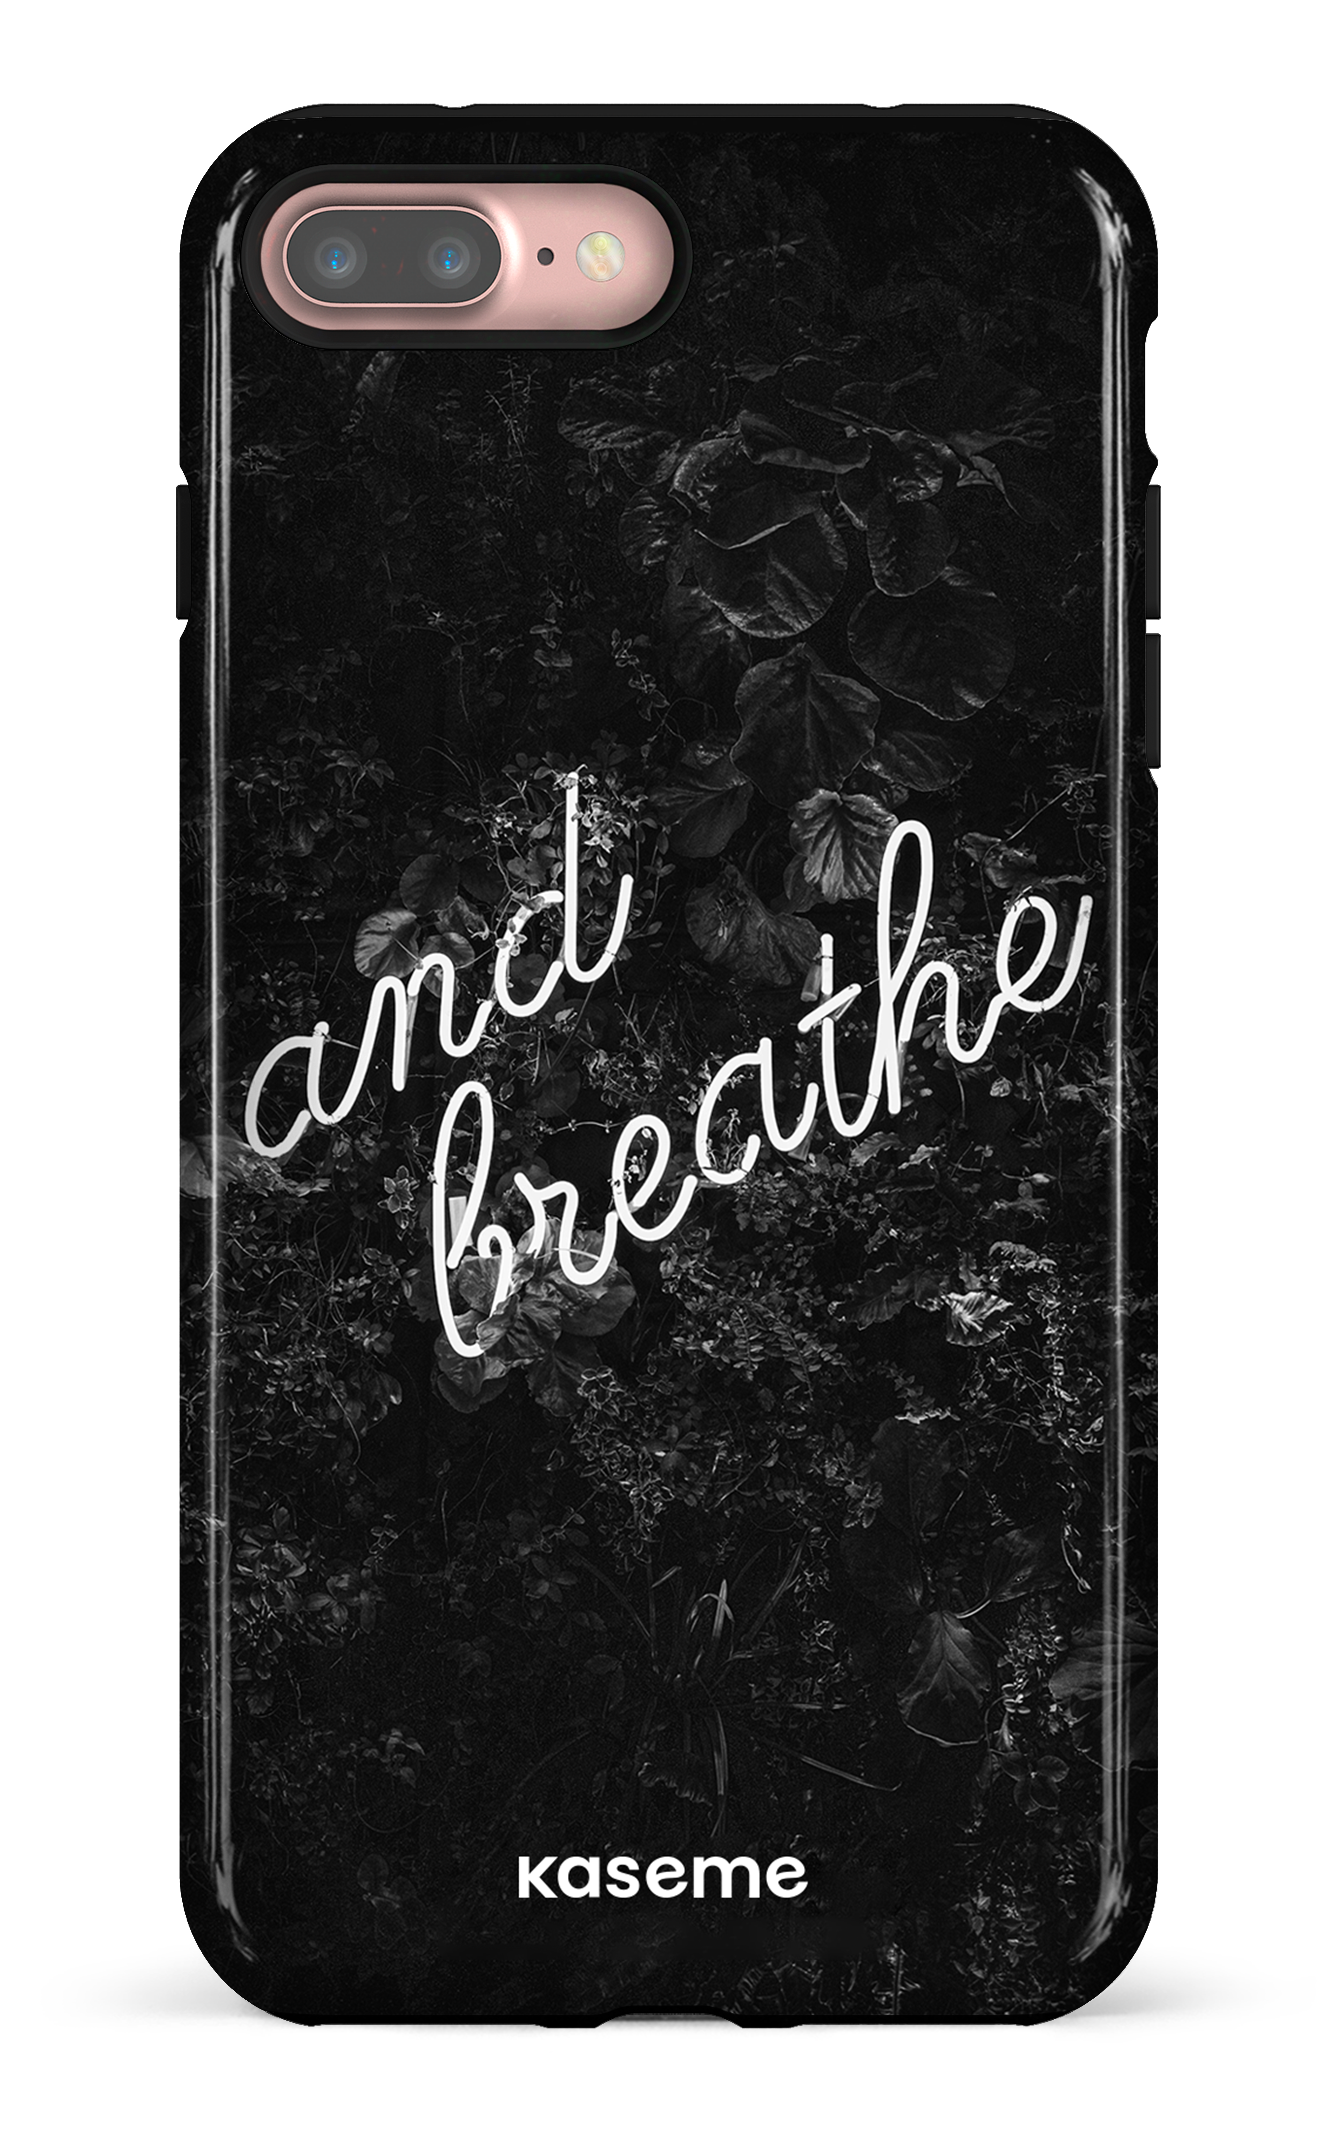 Exhale - iPhone 7 Plus